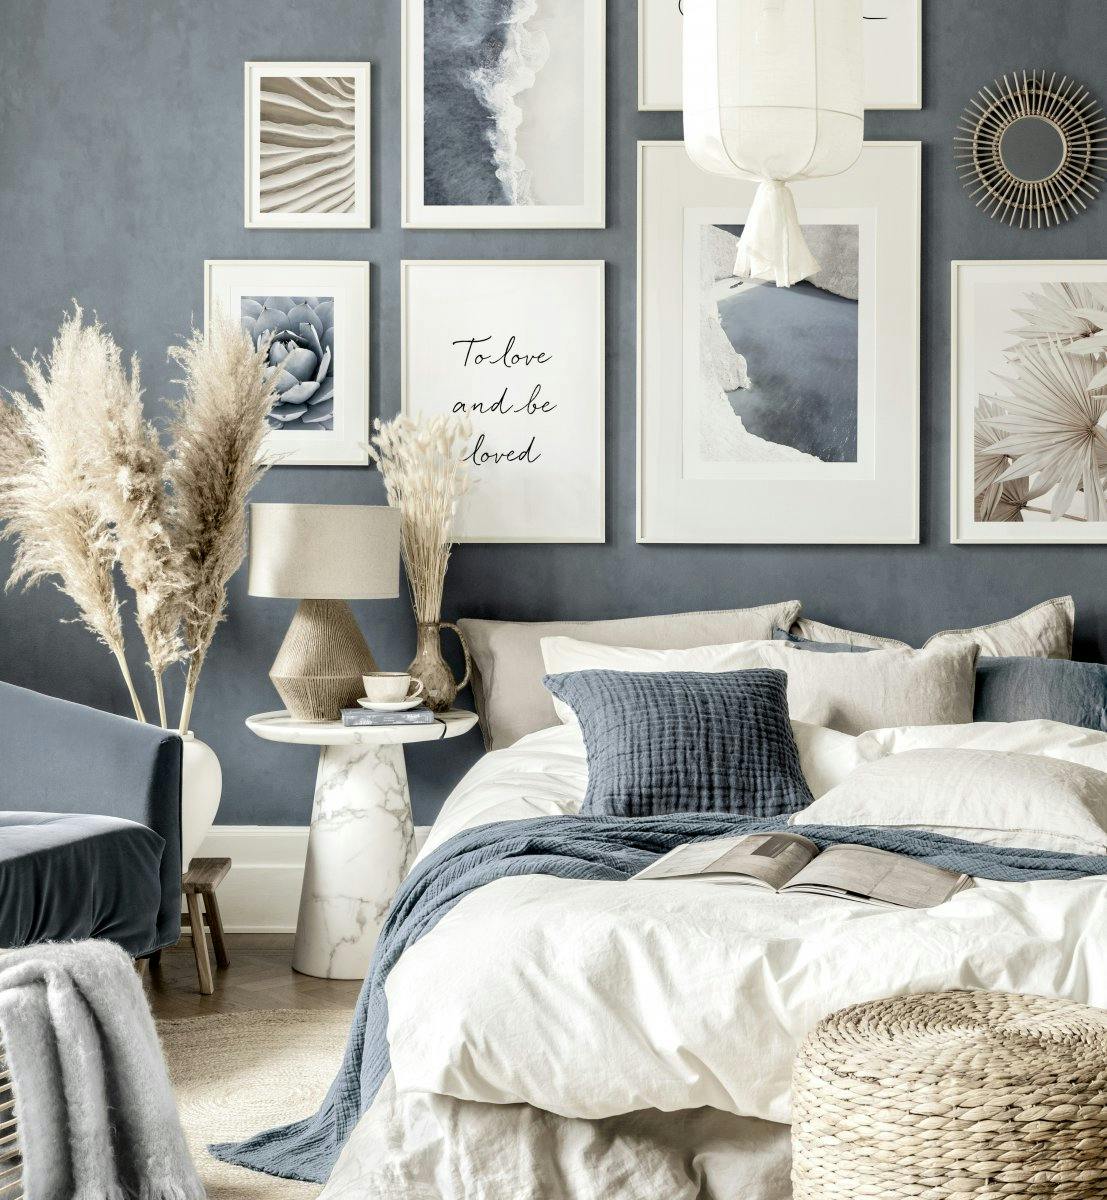 Modrobéžová stěna ložnice a bílé dřevěné rámy na obrazy